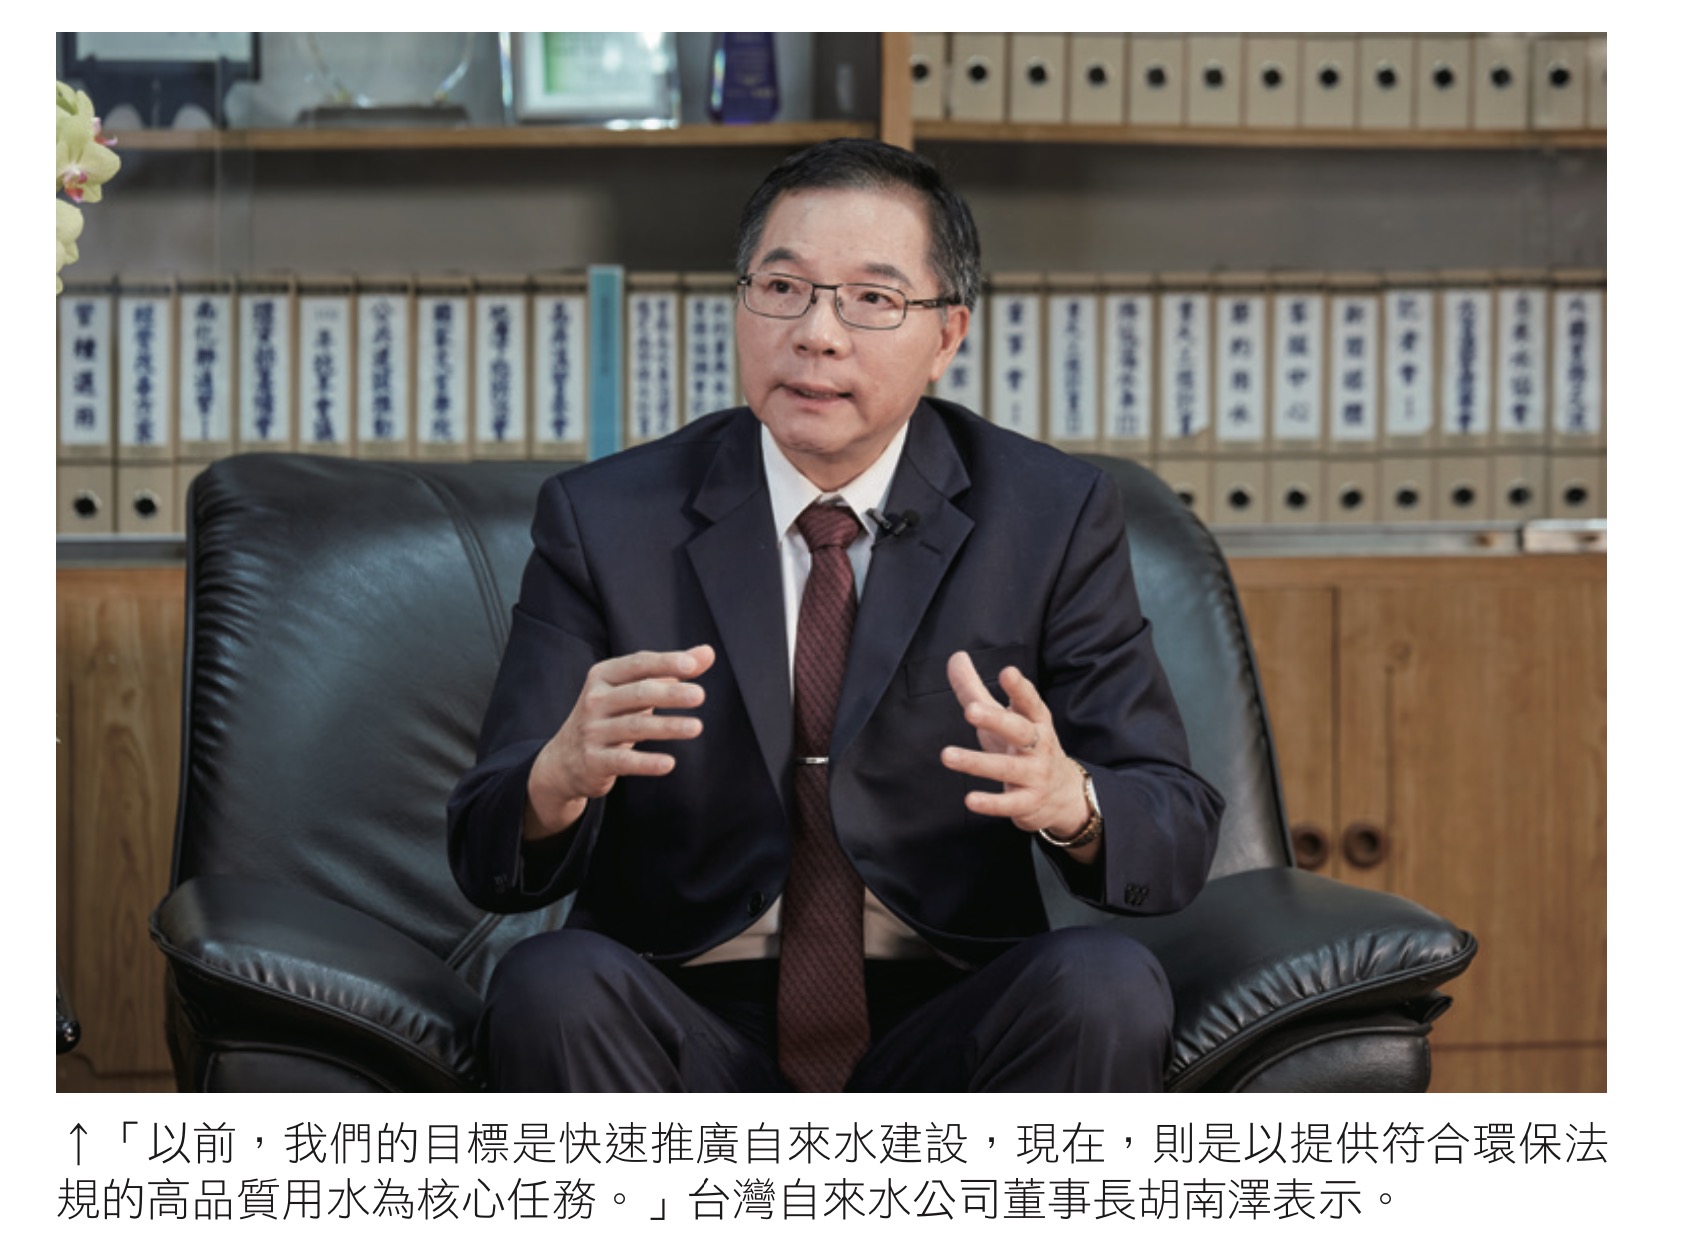 「以前，我們的目標是快速推廣自來水建設，現在，則是以提供符合環保法 規的高品質用水為核心任務。」台灣自來水公司董事長胡南澤表示。